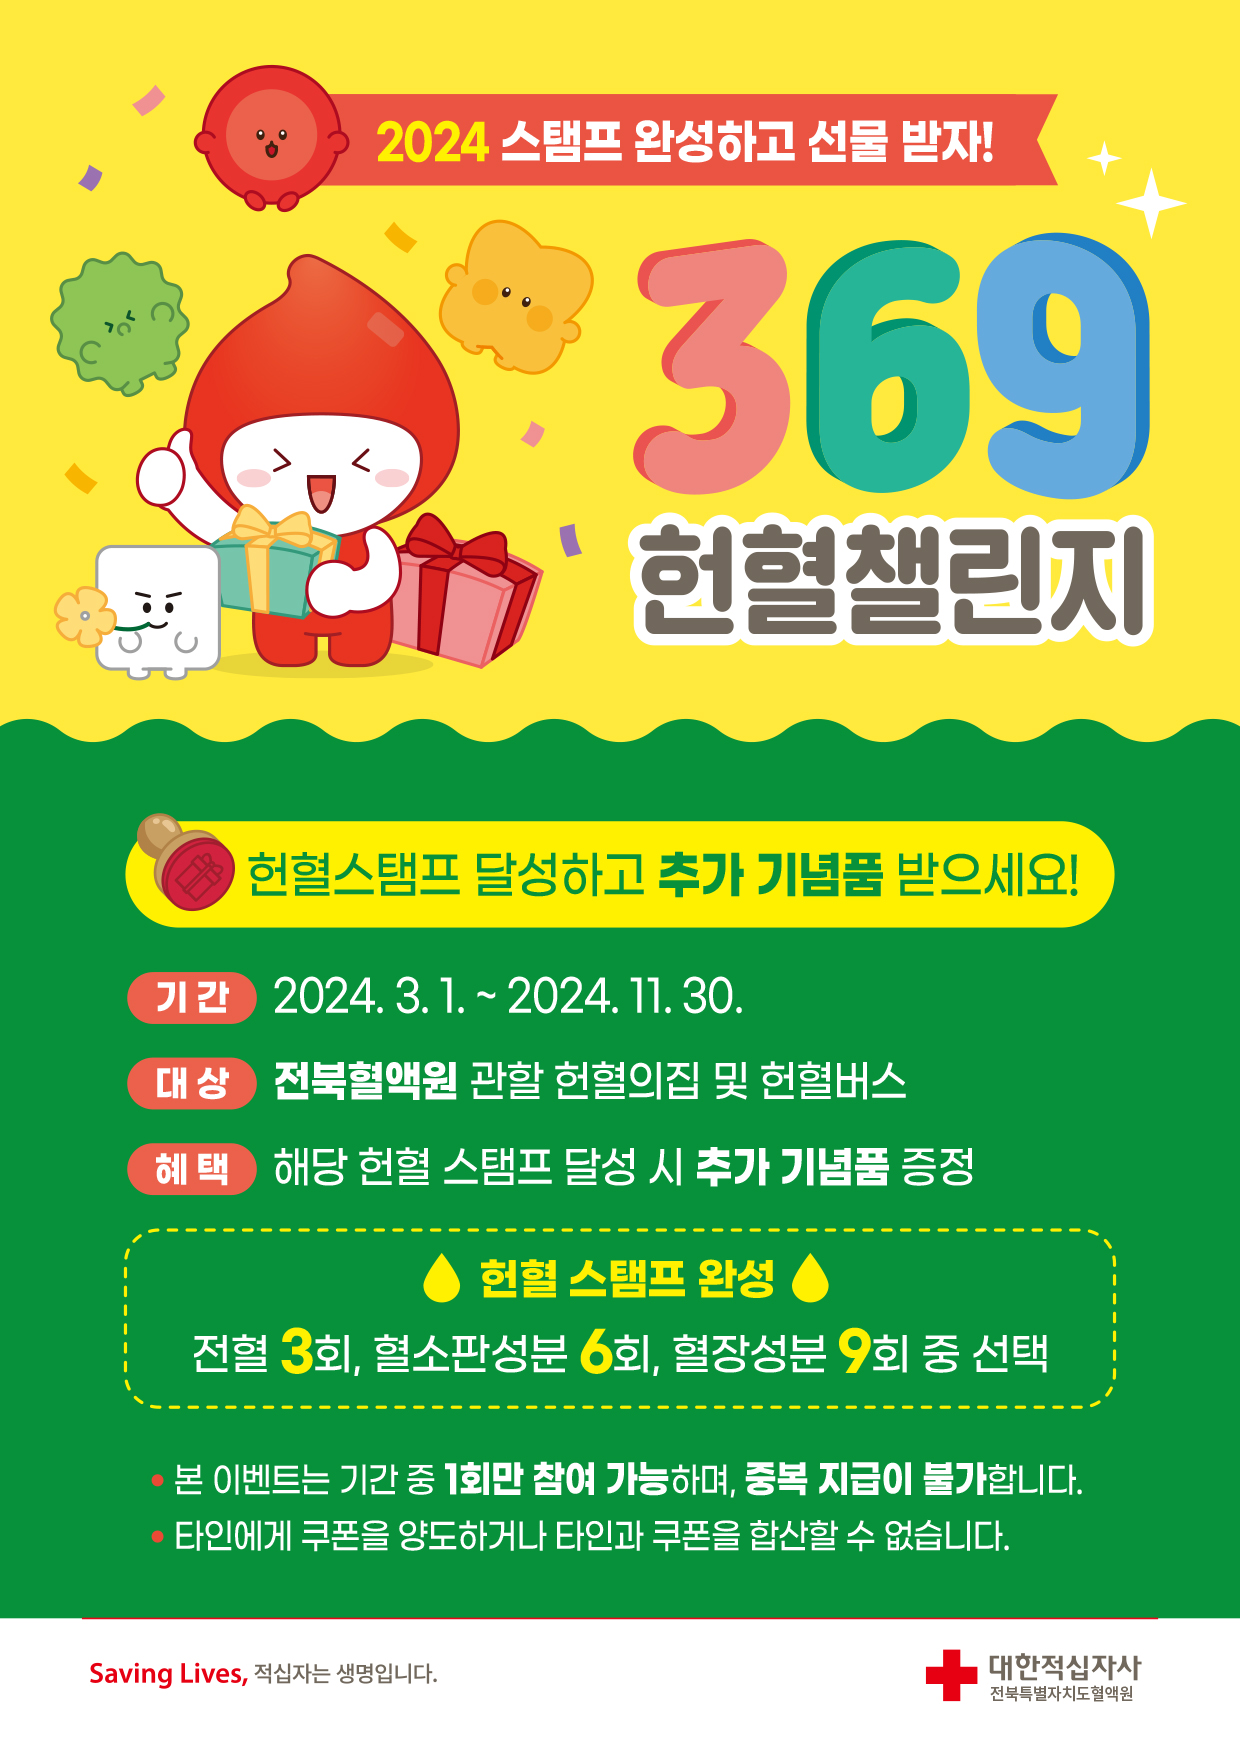 (전북특별자치도혈액원) 369 헌혈챌린지 스탬프 이벤트